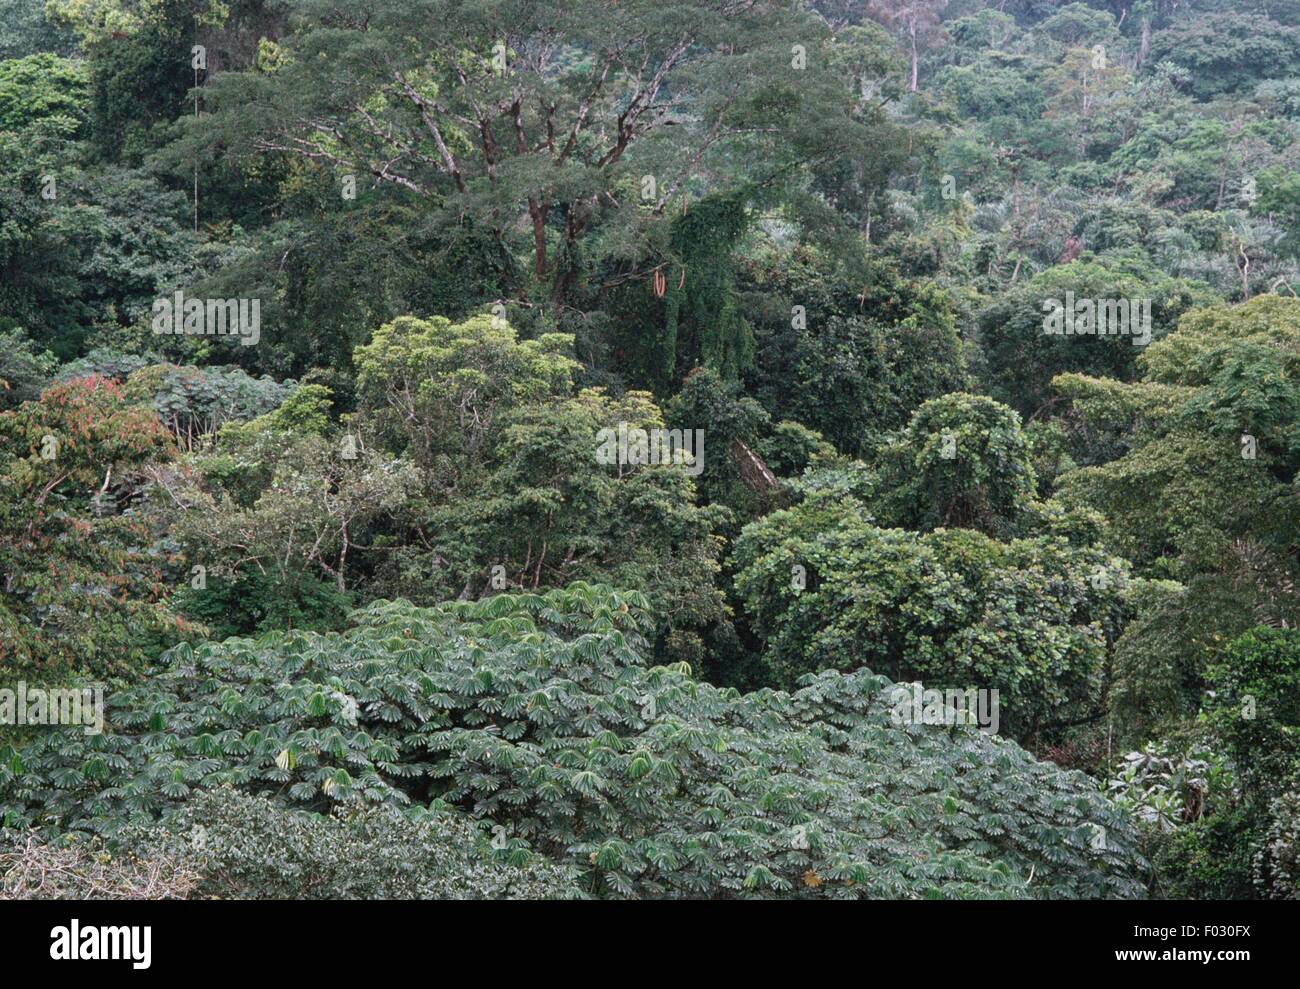 Dans la forêt du rocher de alantours'Ako akas, près d'Ebolowa, Cameroun. Banque D'Images